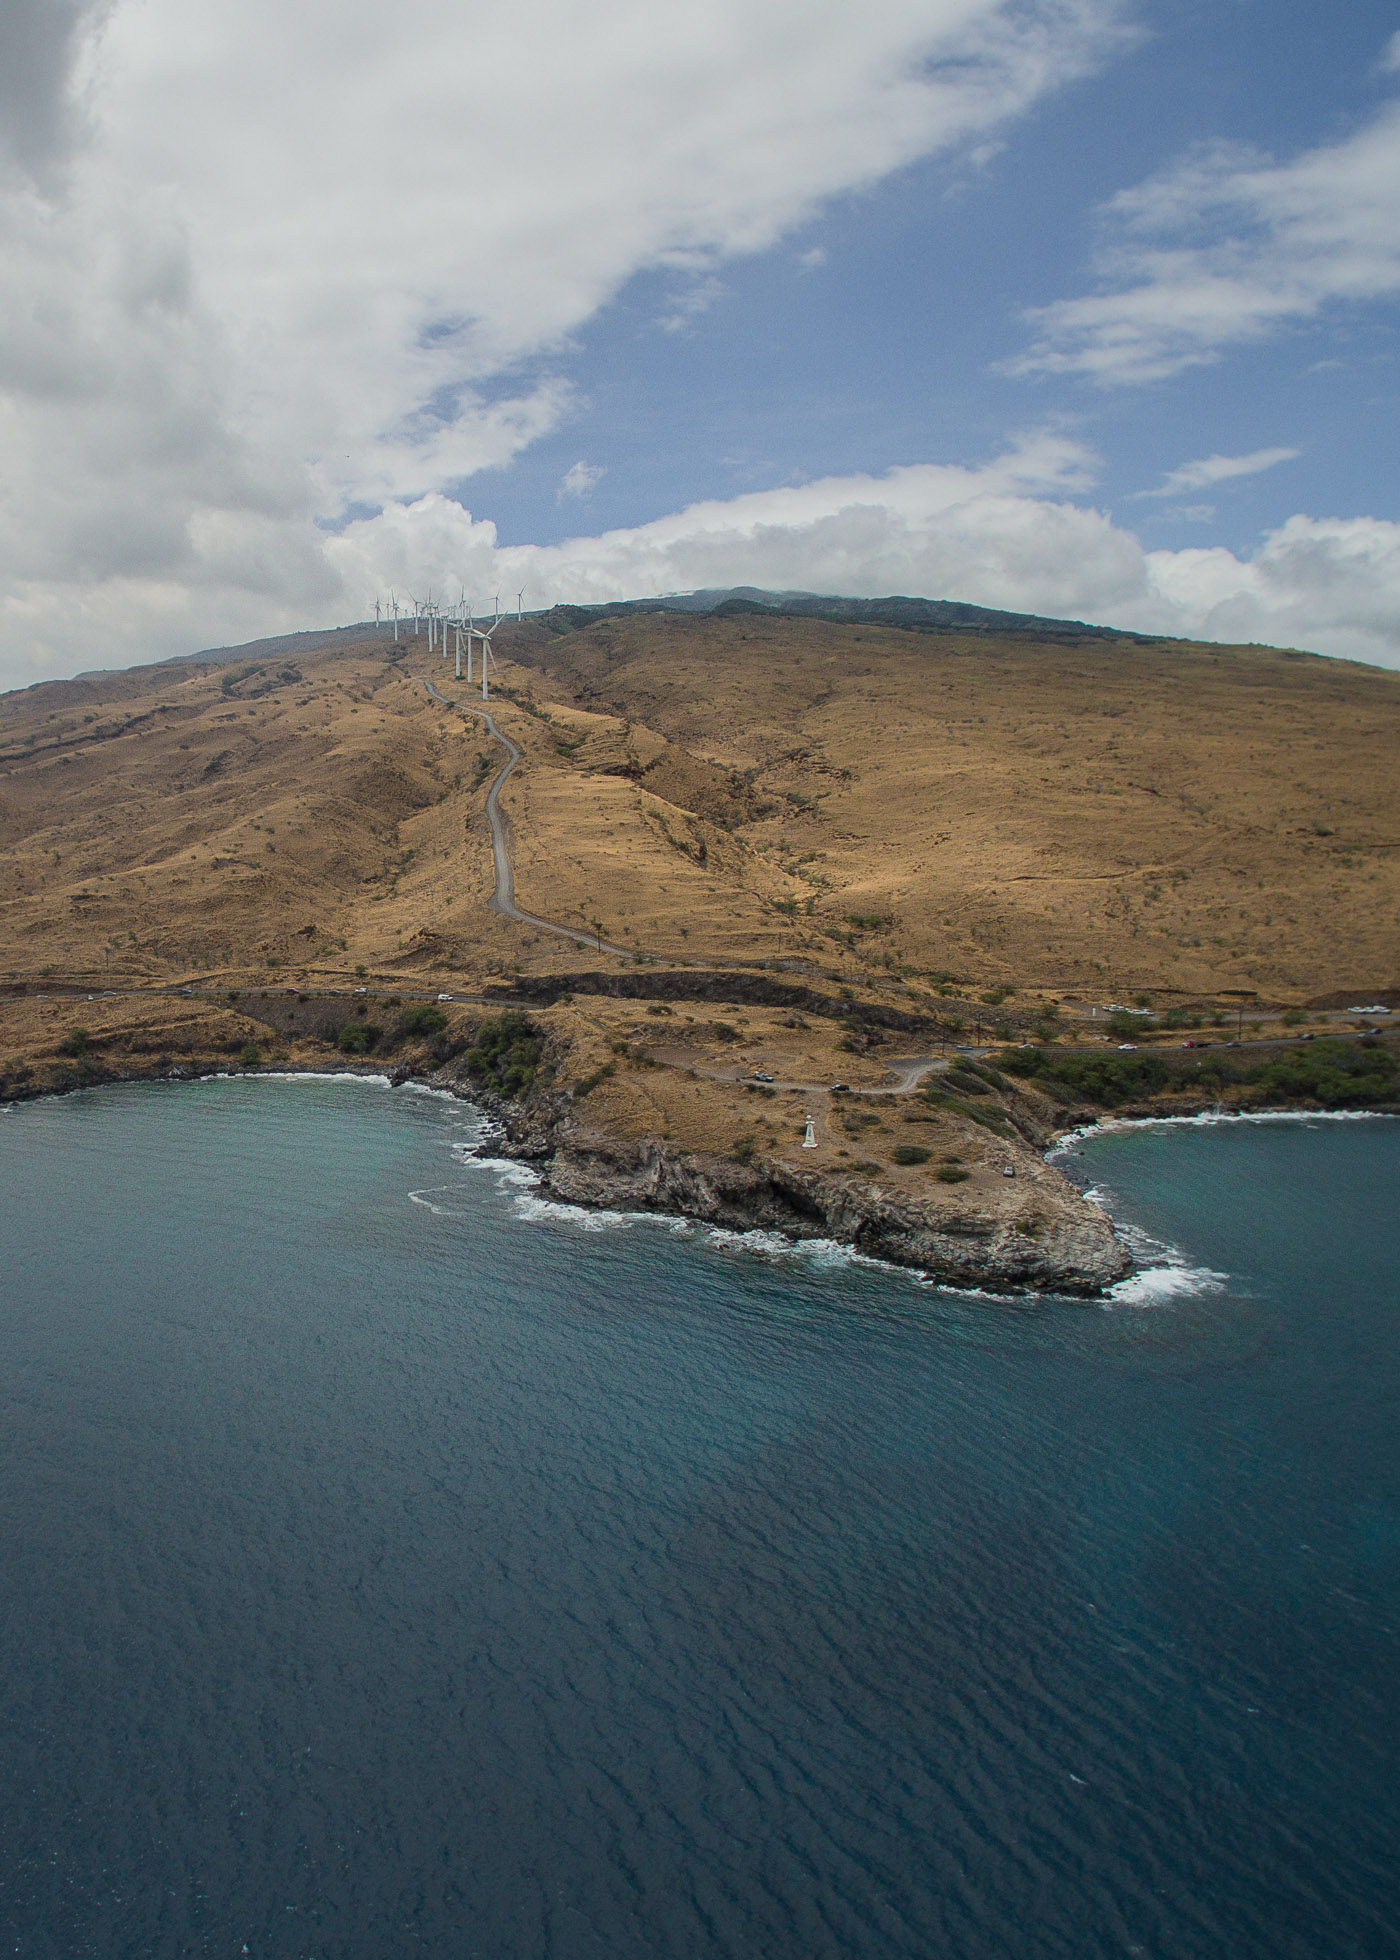 West Maui Wind Farm